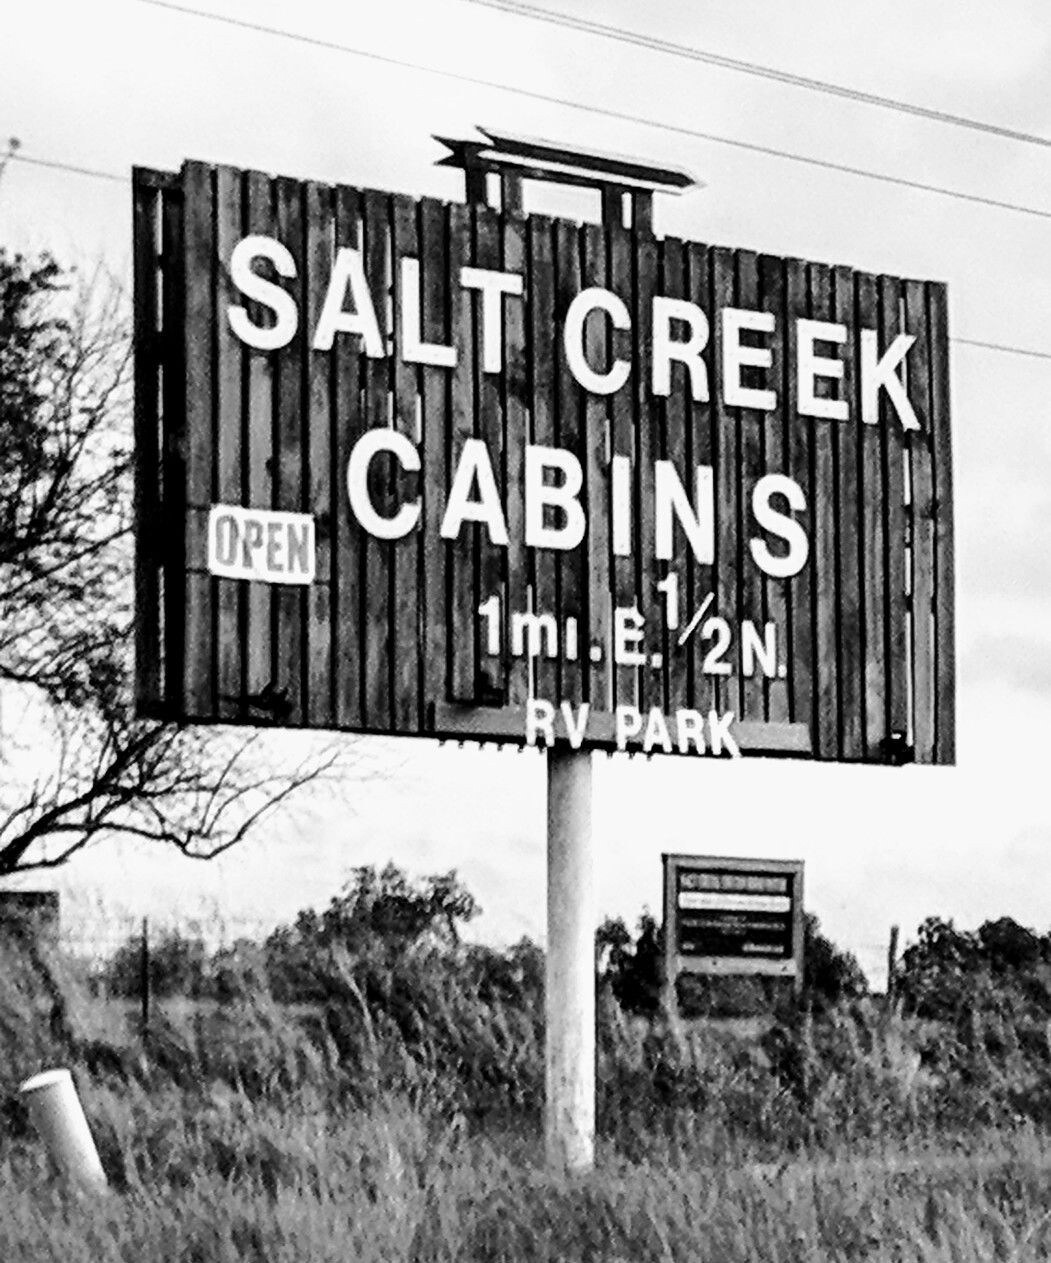 Salt Creek Cabins RV Park, Sp 10, 30/50 amp hookup